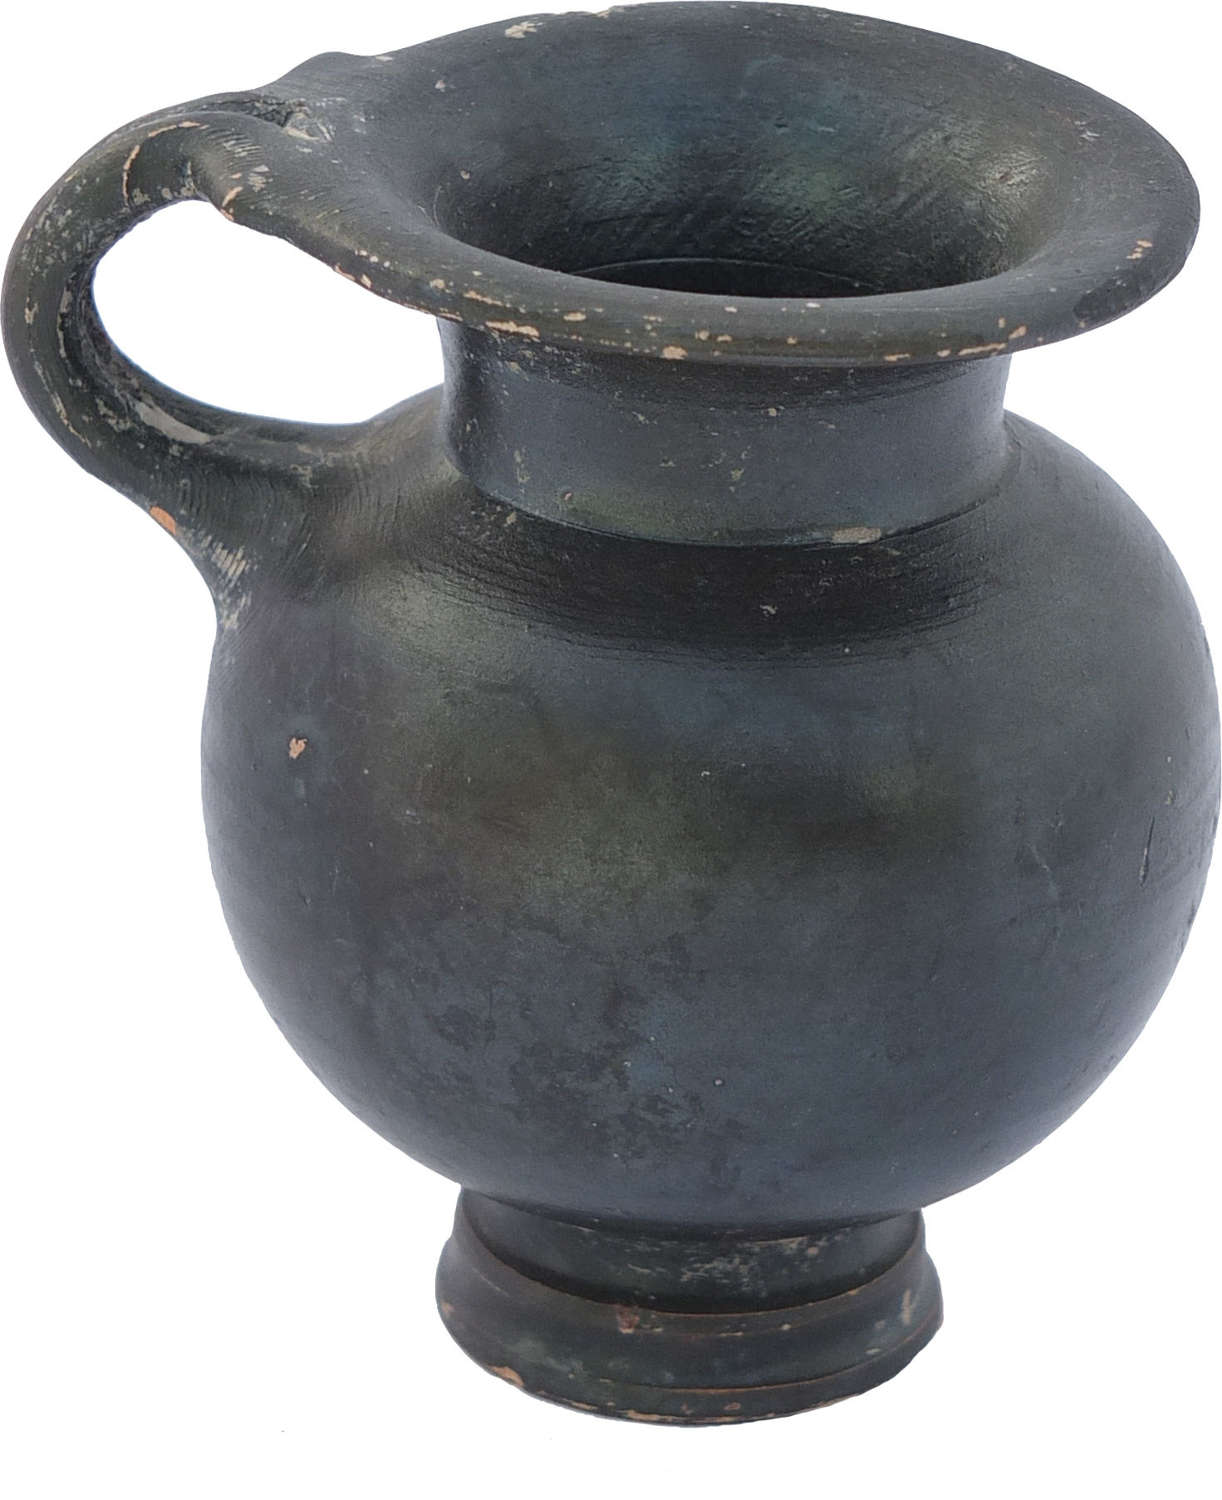 An elegant Greek black glazed cup, 4th Century B.C.